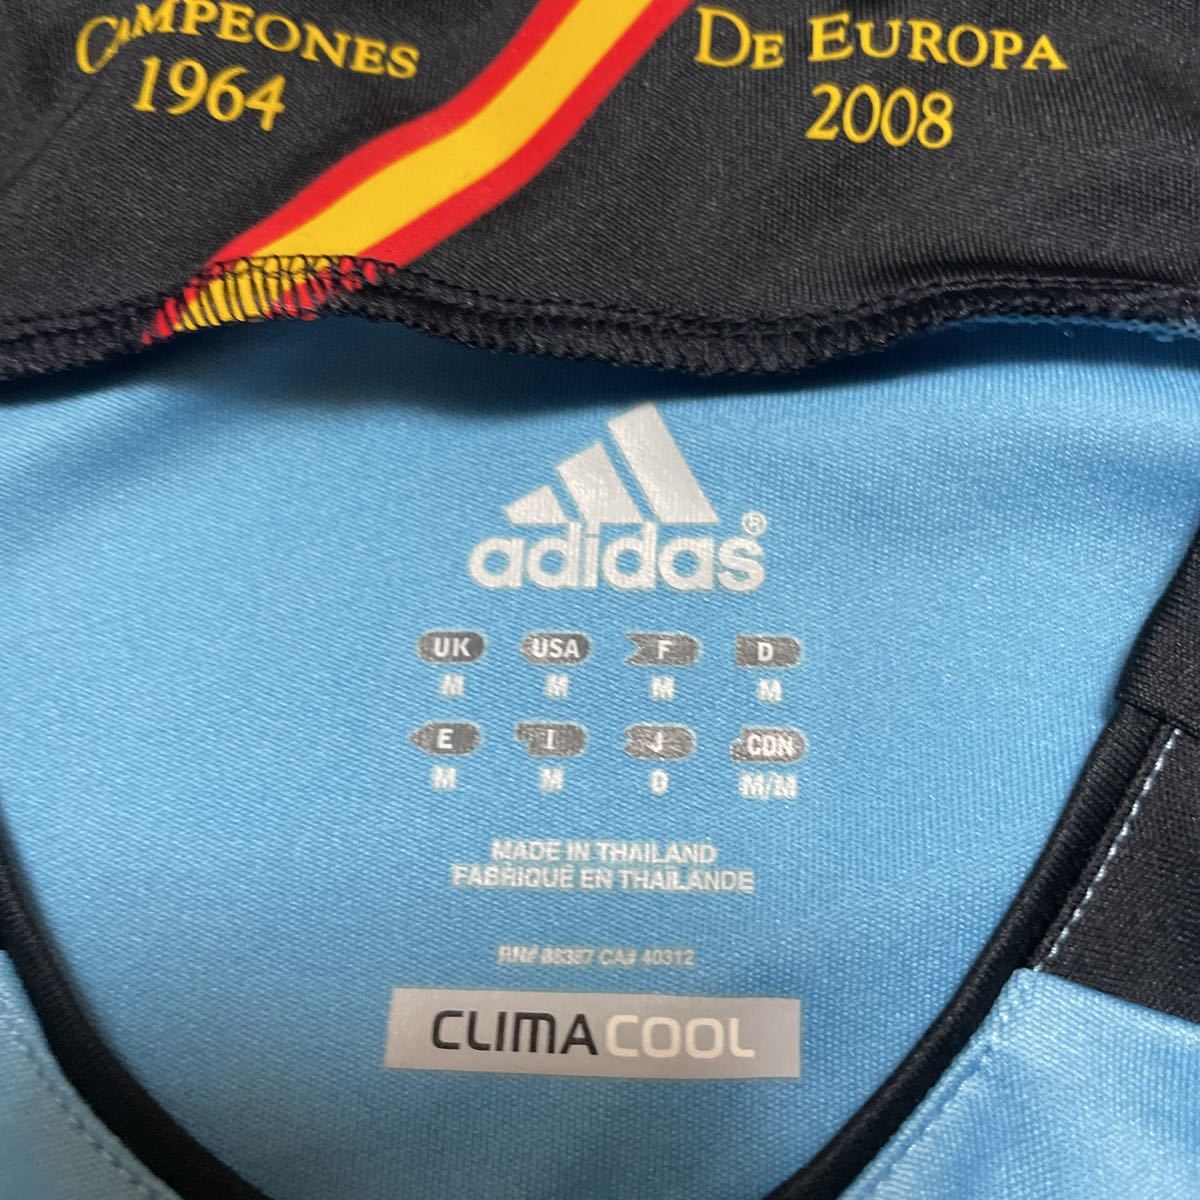 ☆☆☆ スペイン 代表 アディダス adidas euro 2012 ビジャ モラタ イスコ デ・ヘア シルバ セスク シャビ イニエスタ プジョル ピケ 美品